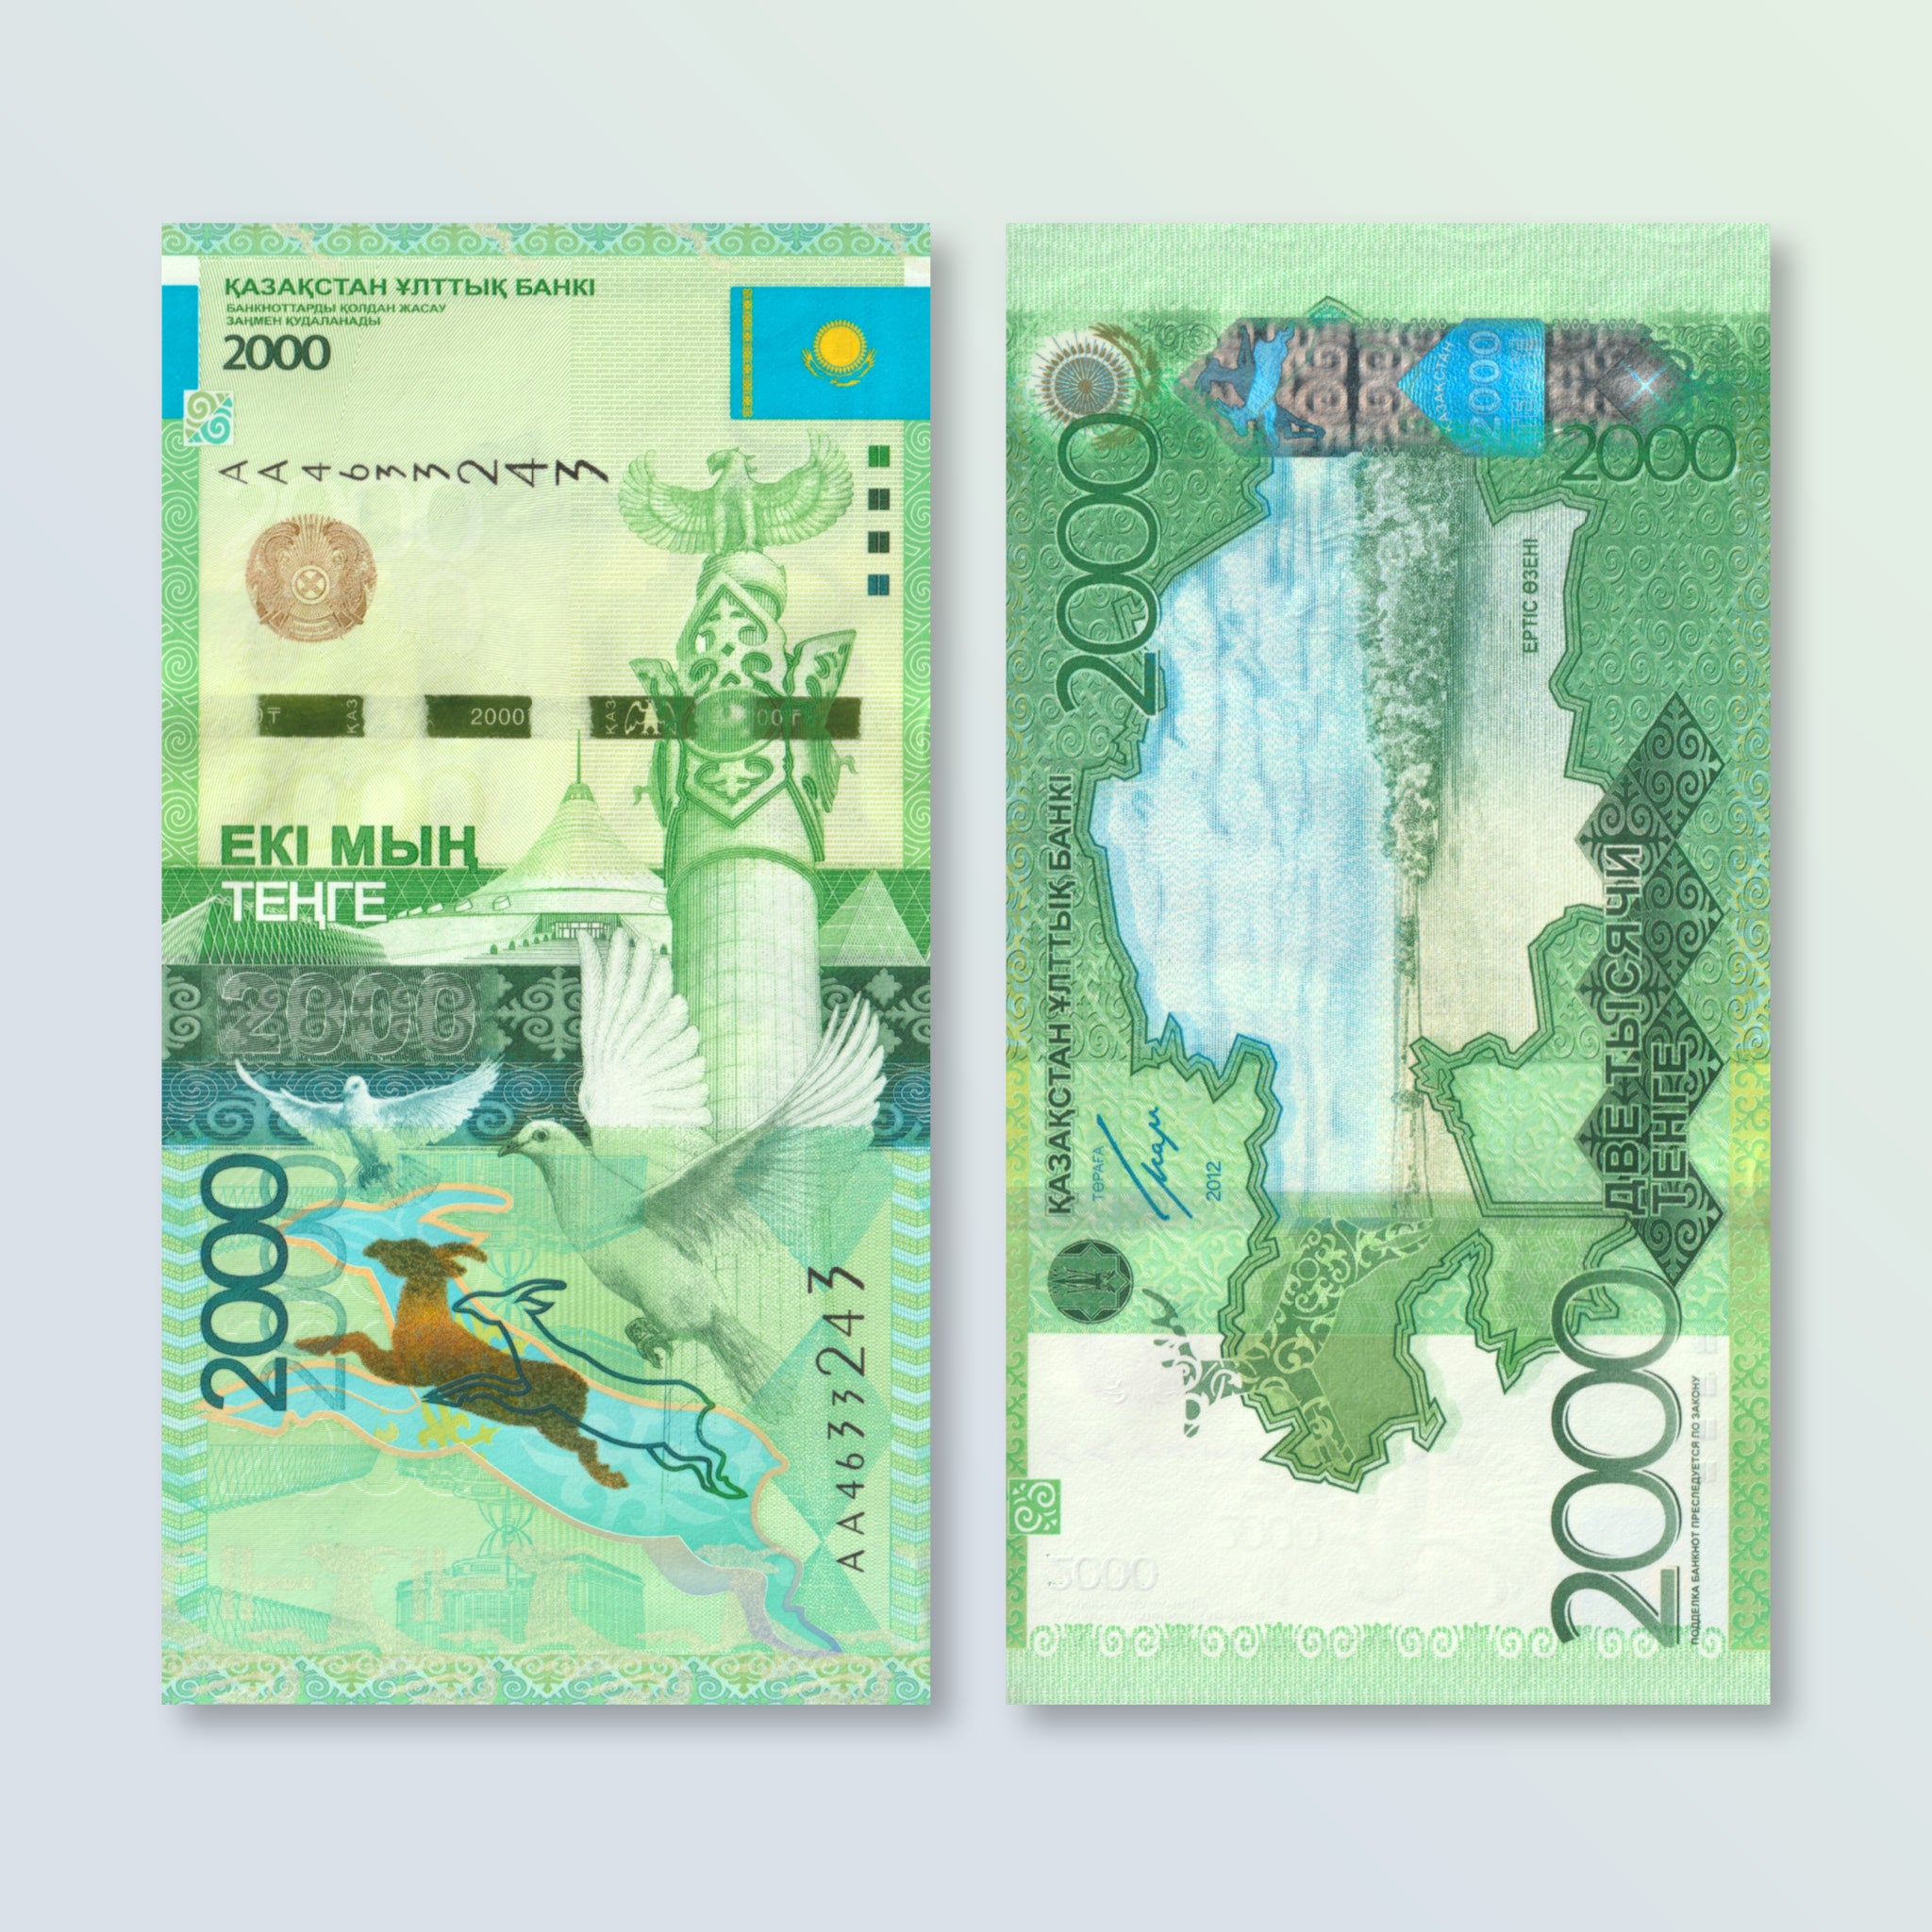 Kazakhstan 2000 Tenge, 2012, B140a, P41, UNC - Robert's World Money - World Banknotes